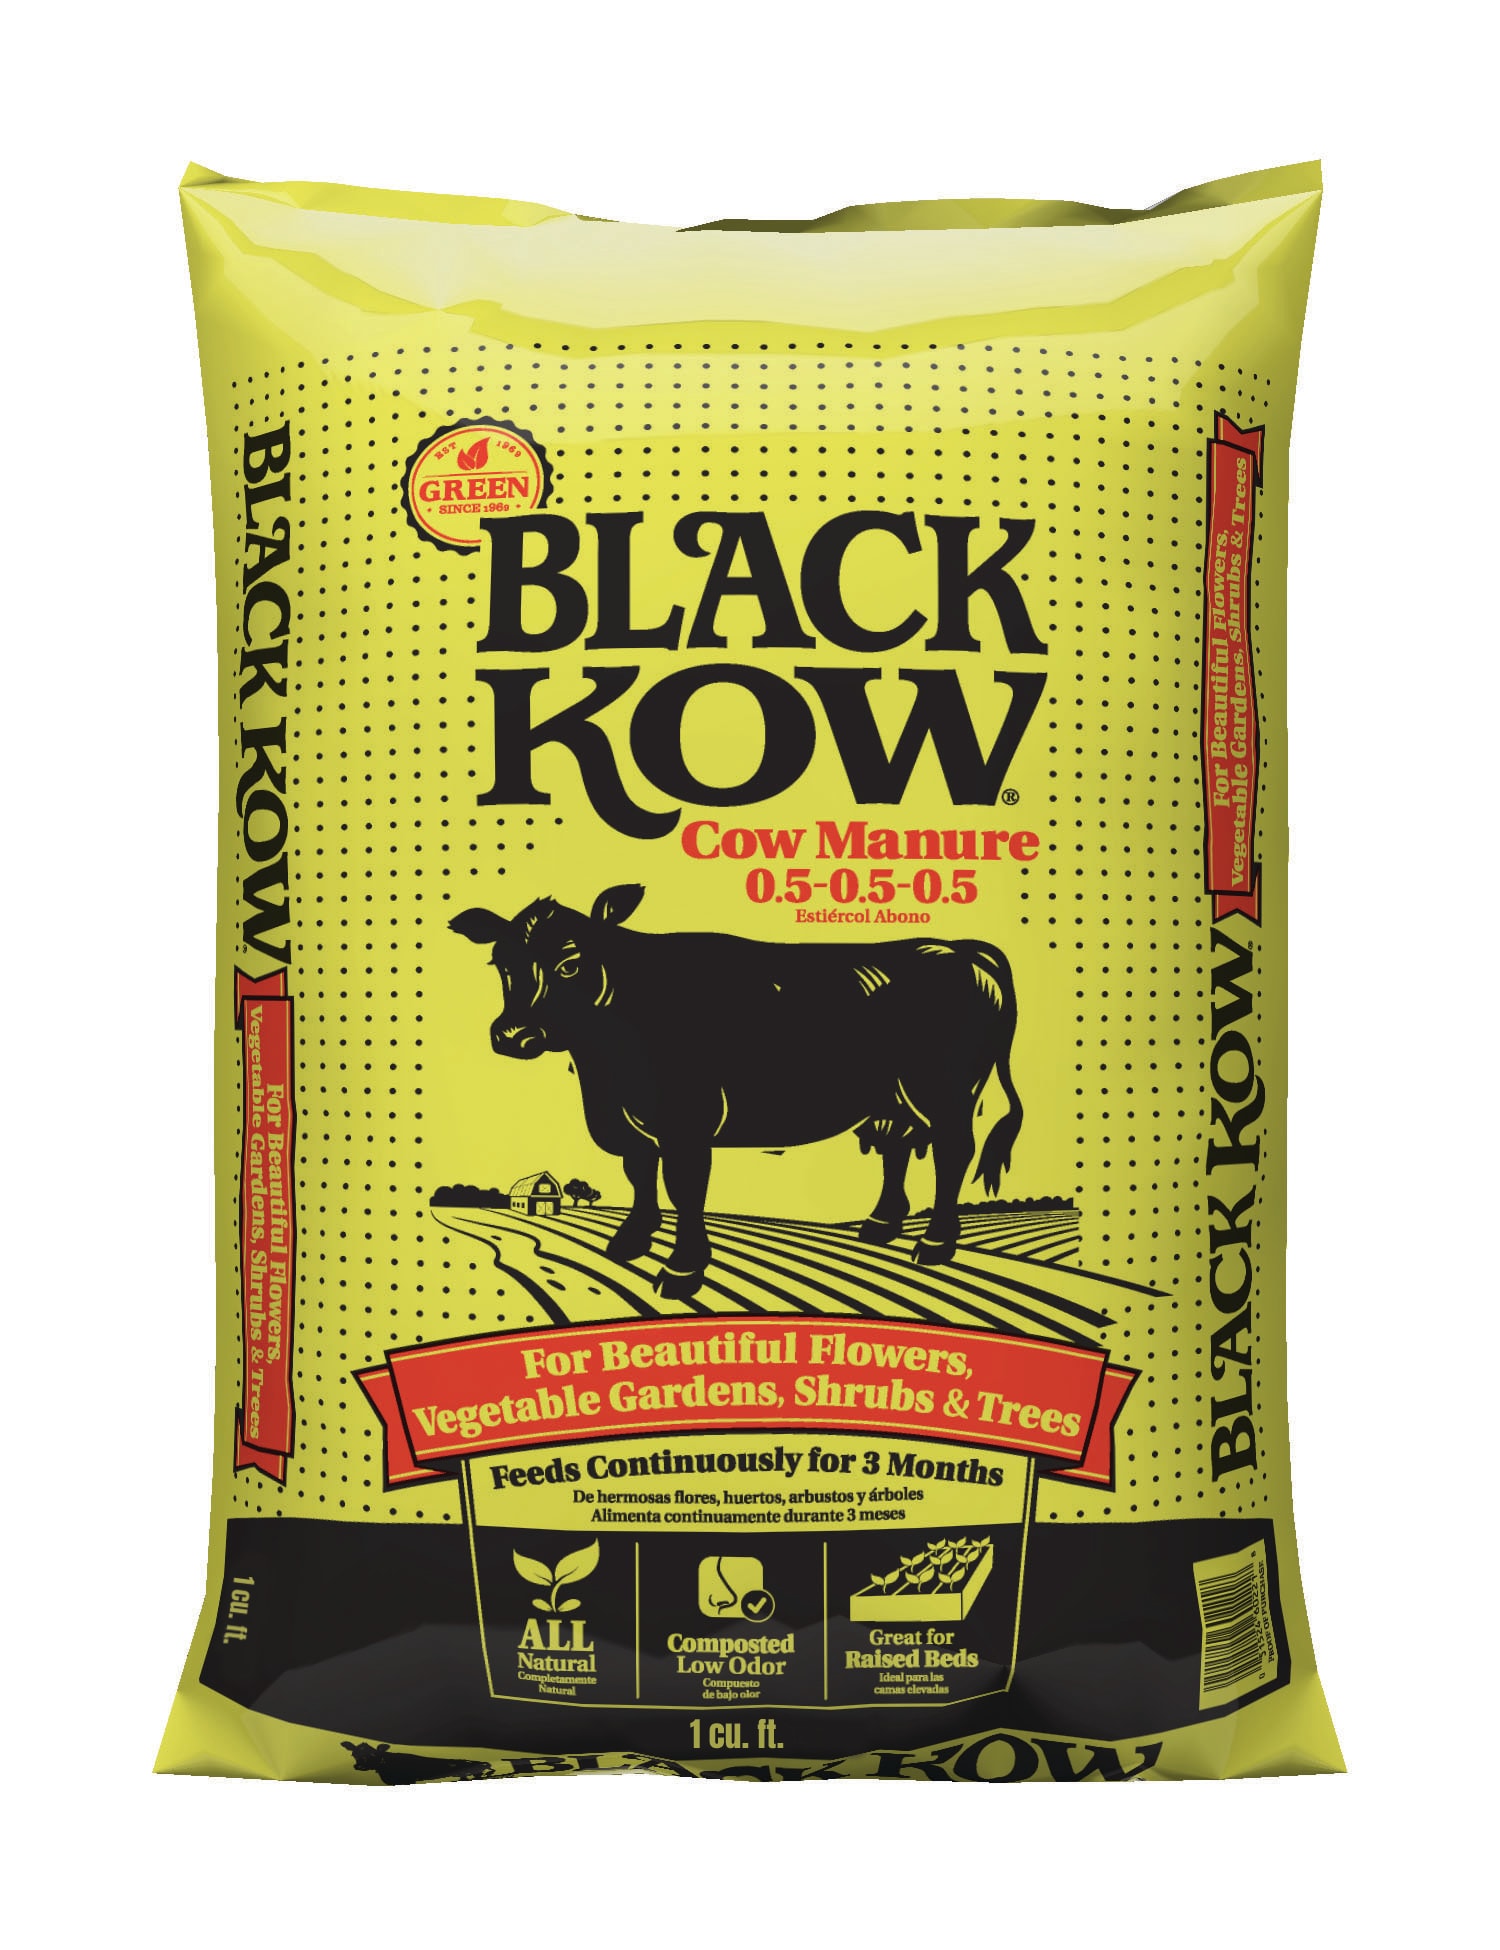 Image of Bag of cow manure fertilizer